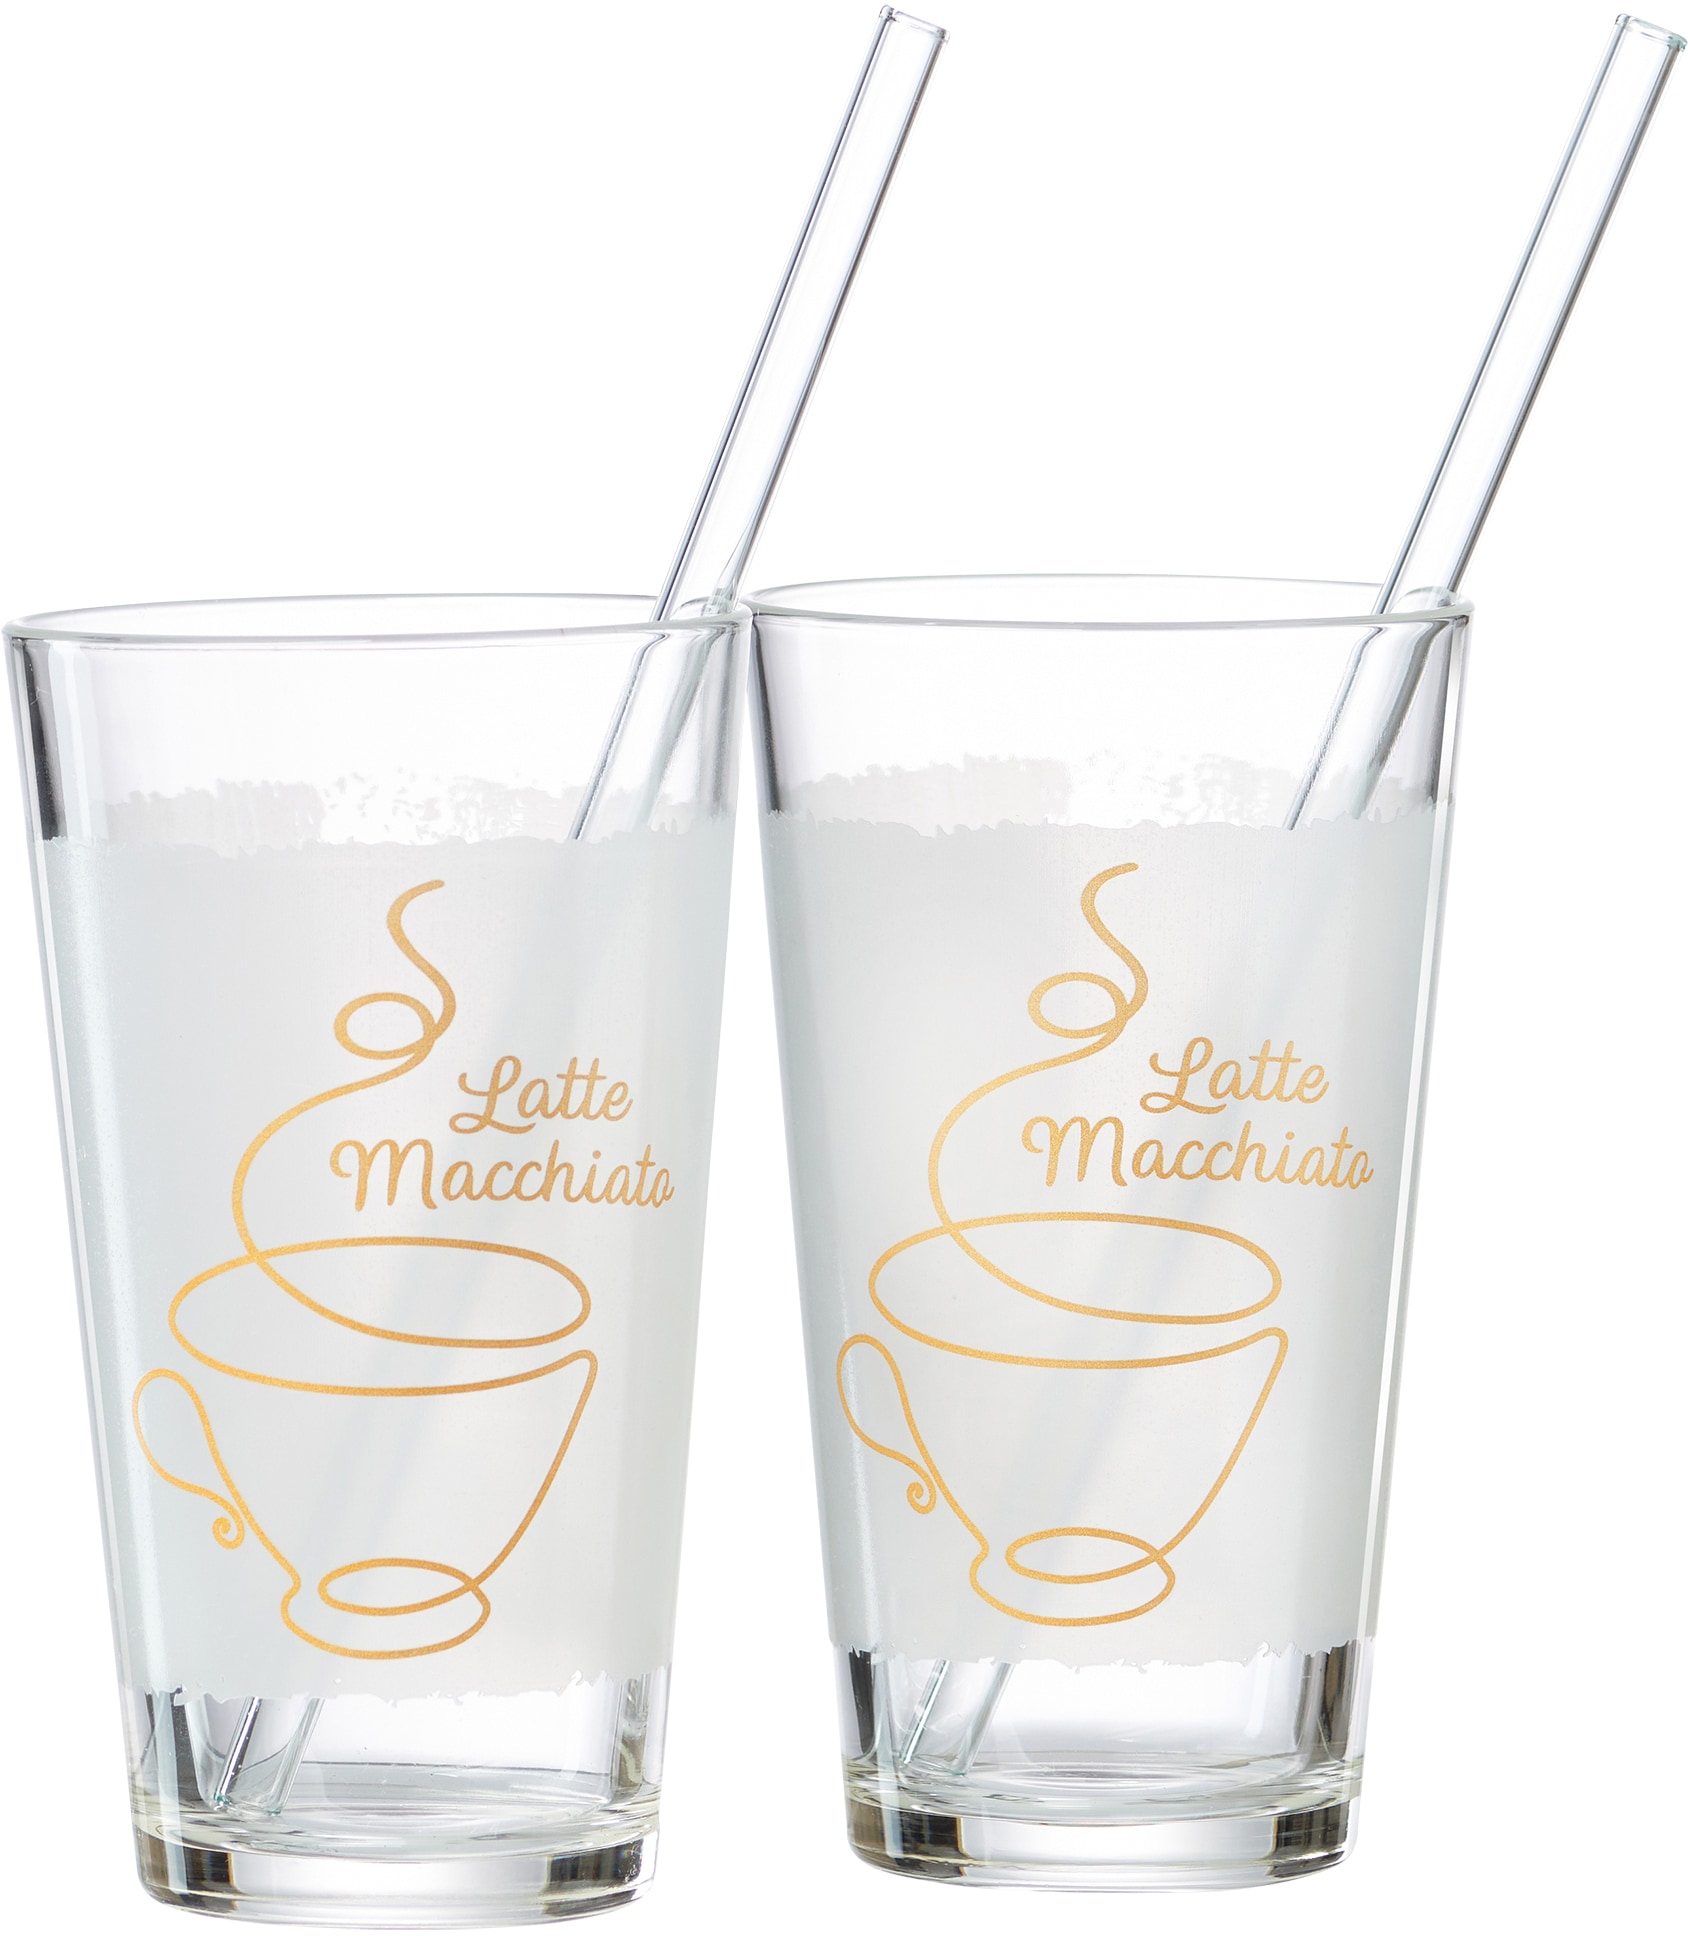 Ritzenhoff & Breker Latte-Macchiato-Glas »Coffee«, (Set, 4 tlg., 2 Latte Macchiato Gläser mit je einem Glas-Trinkhalm, je 350 ml), 4-teilig (2 Gläser und 2 Glas-Trinkhalme), 350 ml